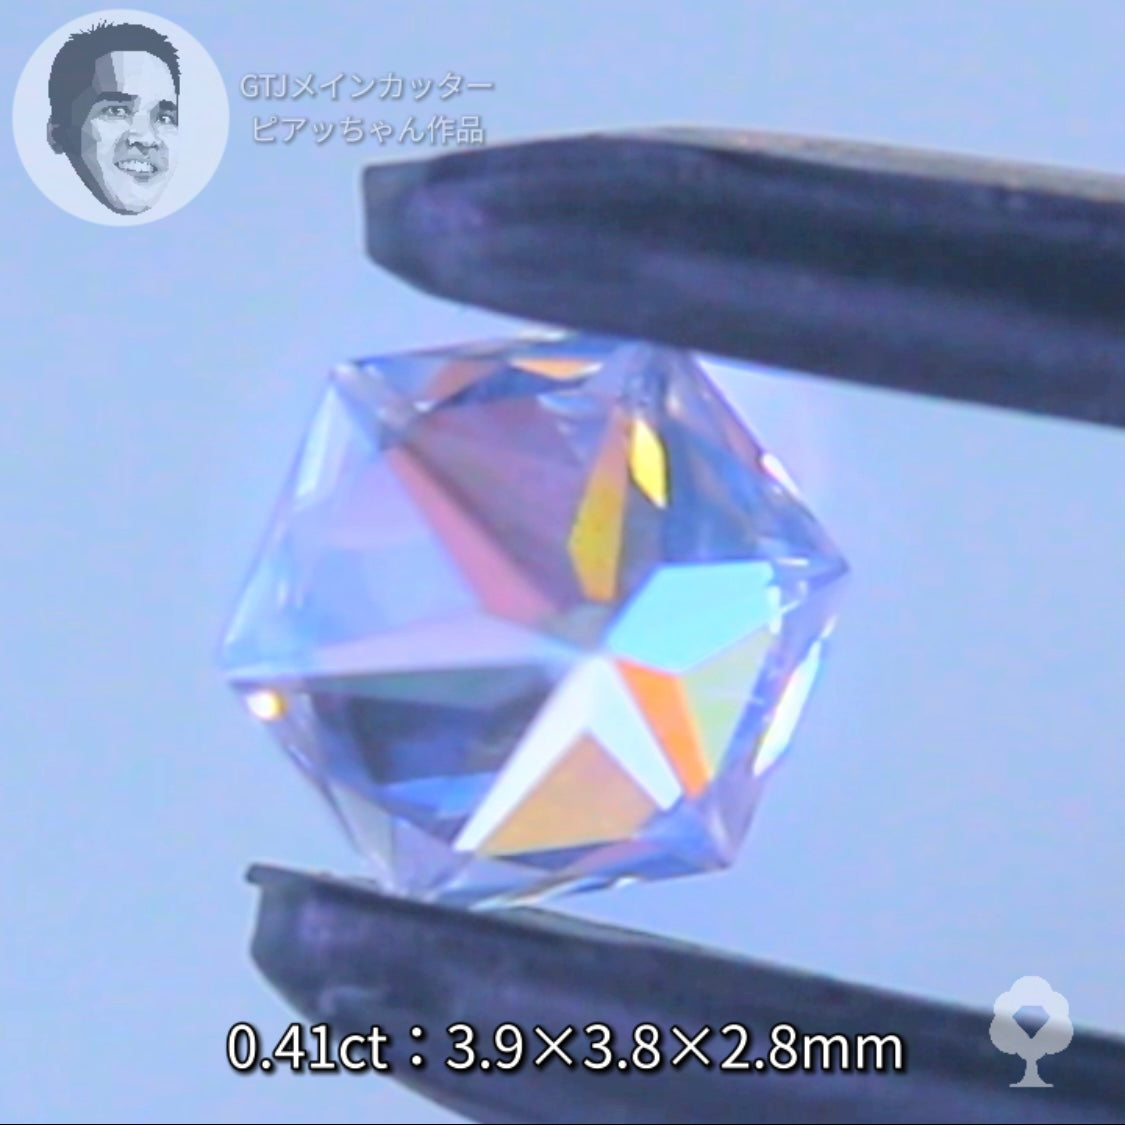 ピアッちゃん作品✨ 雪の結晶のような６角形の２個セット計0.83ct💎💎ジルコン (0.41ct 0.42ct)